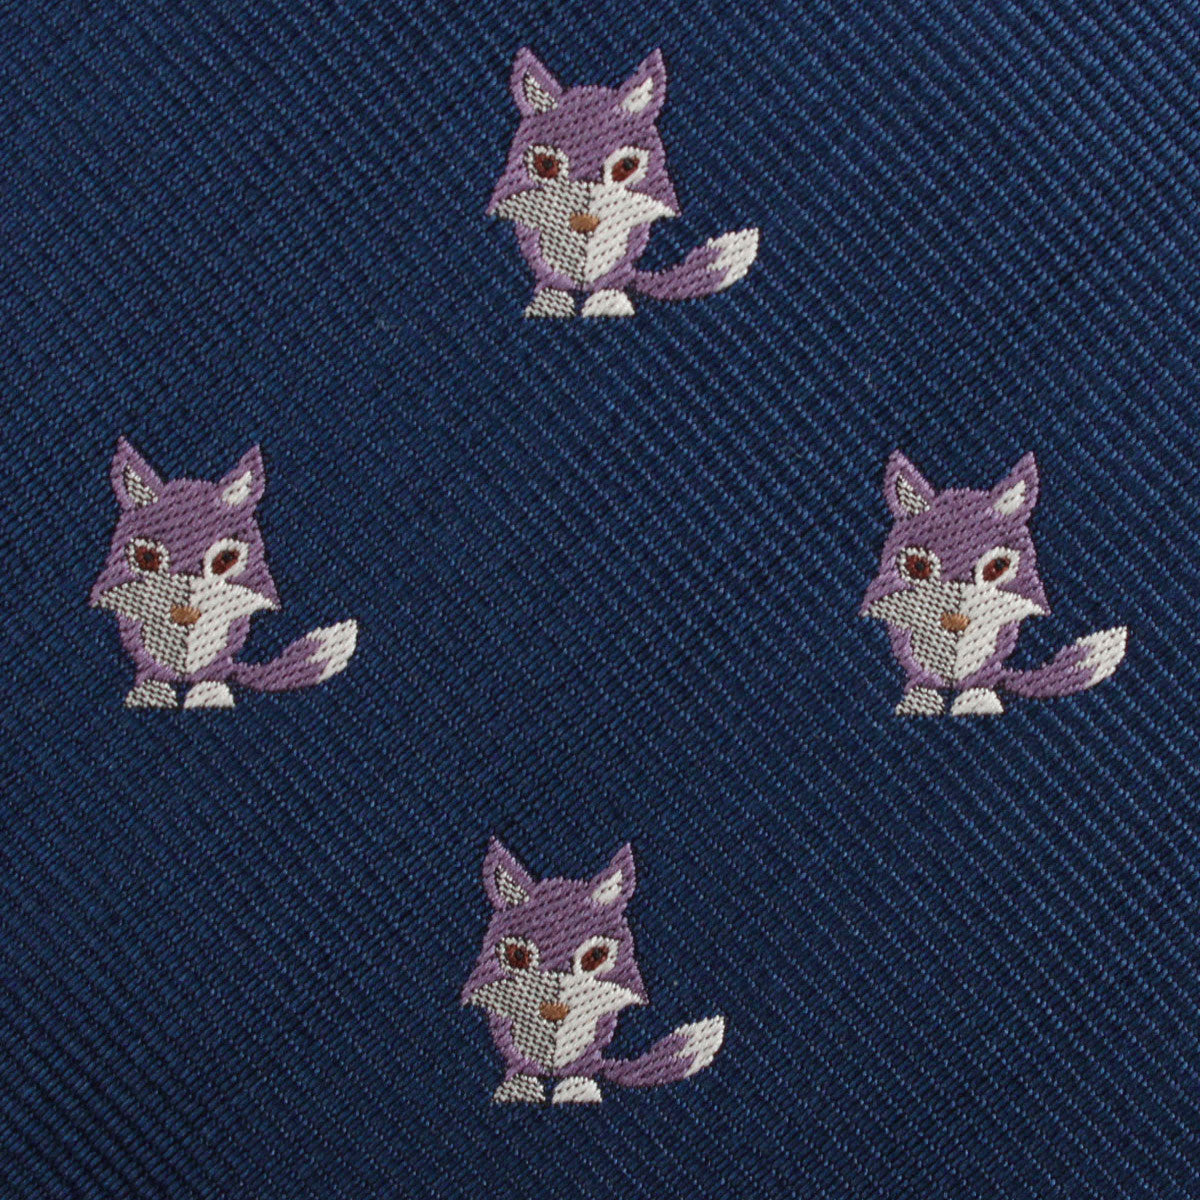 Bengal Wolf Fabric Skinny Tie